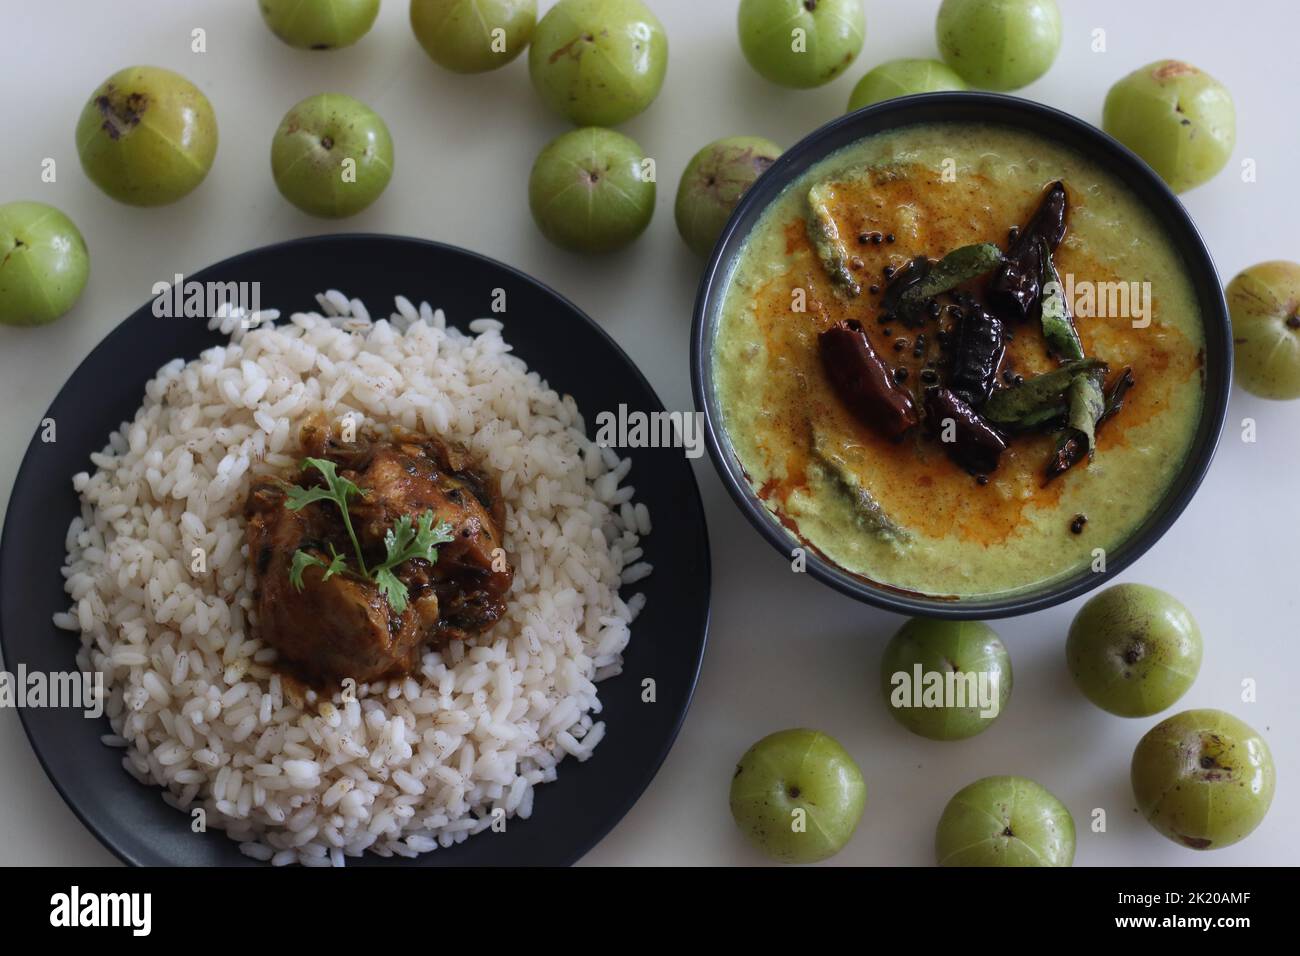 Curry de Nellika servi avec un repas de riz au Kerala. Curry de groseilles à base de noix de coco de style Kerala, fait de groseilles à maquereau fraîches, de noix de coco moulues et d'épices. Prise de vue sur W Banque D'Images